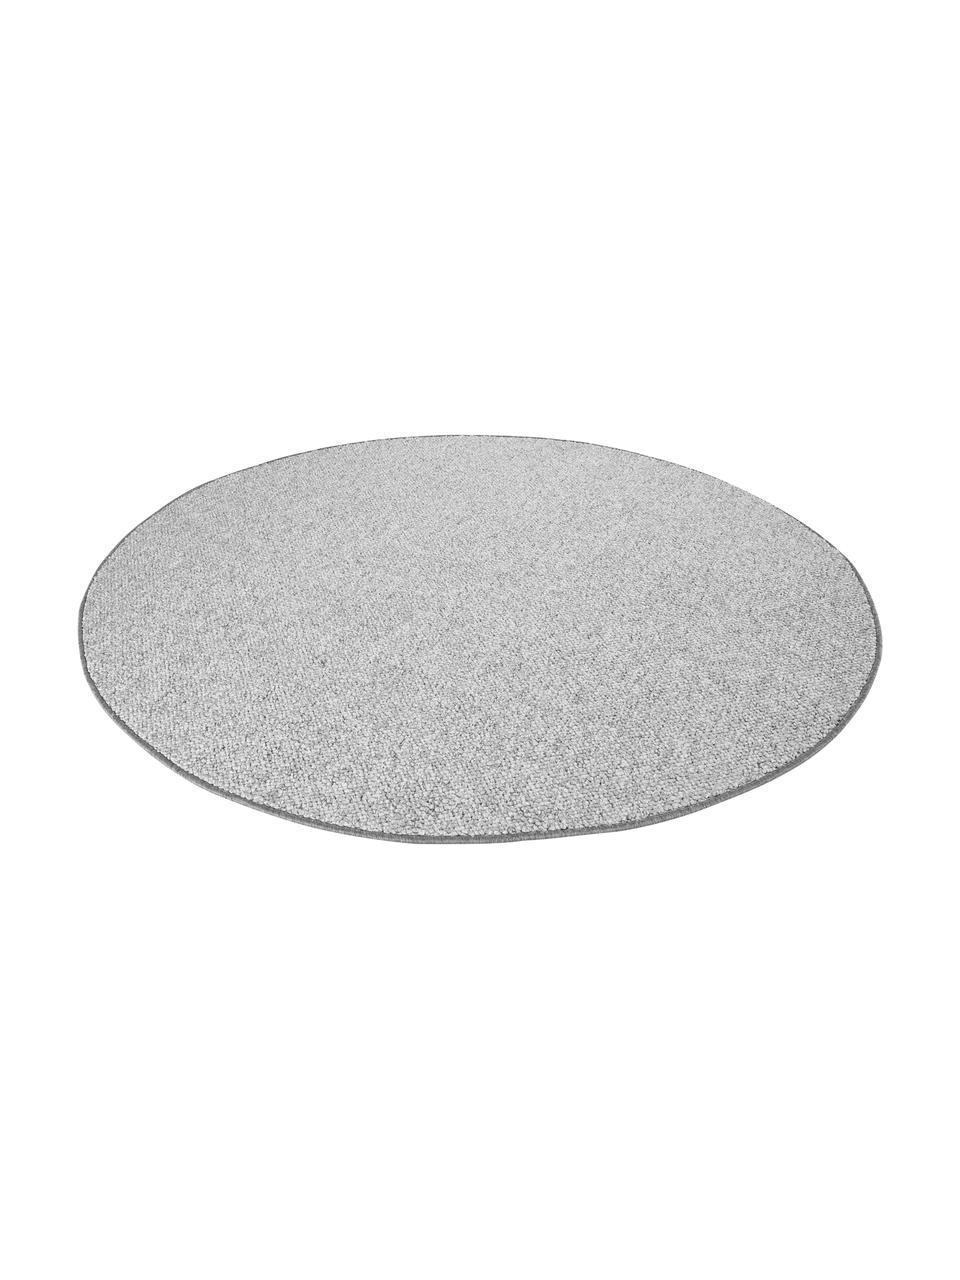 Runder Teppich Lyon mit Schlingen-Flor, Flor: 100% Polypropylen Rücken, Grau, melangiert, Ø 200 cm (Größe L)